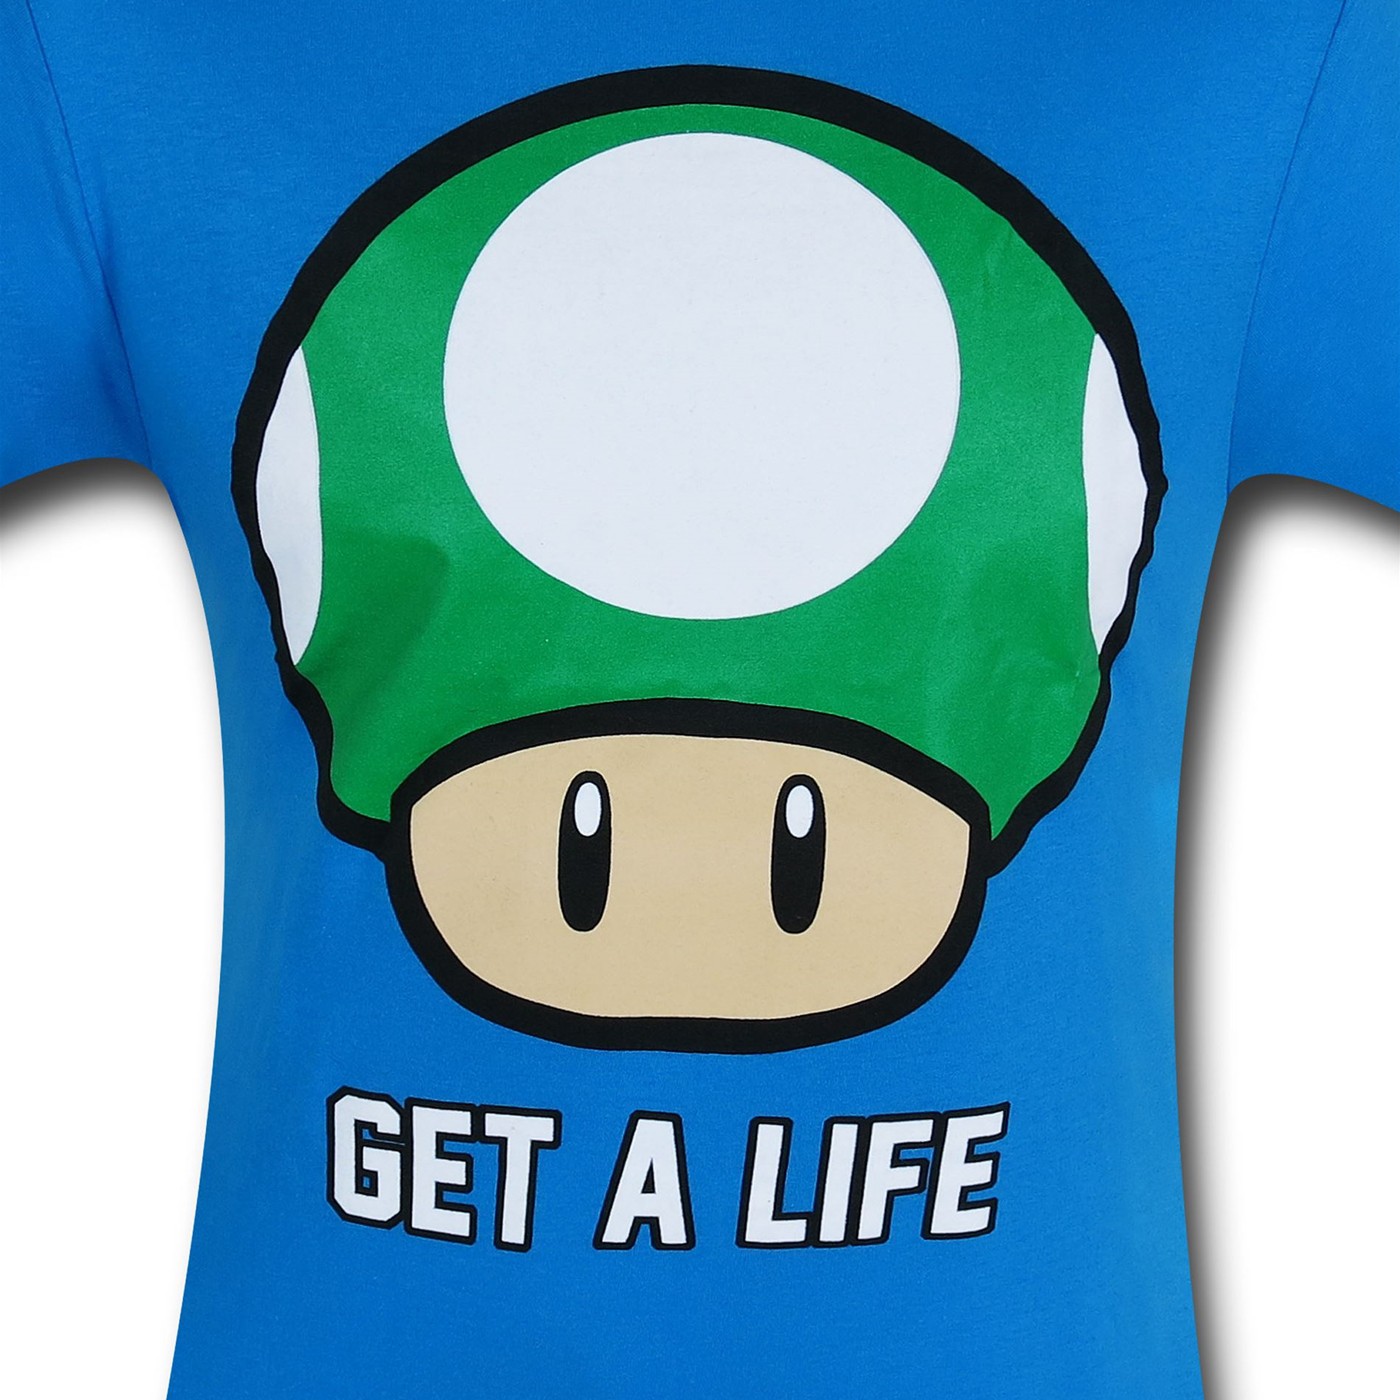 Nintendo Get A Life Blue T-Shirt